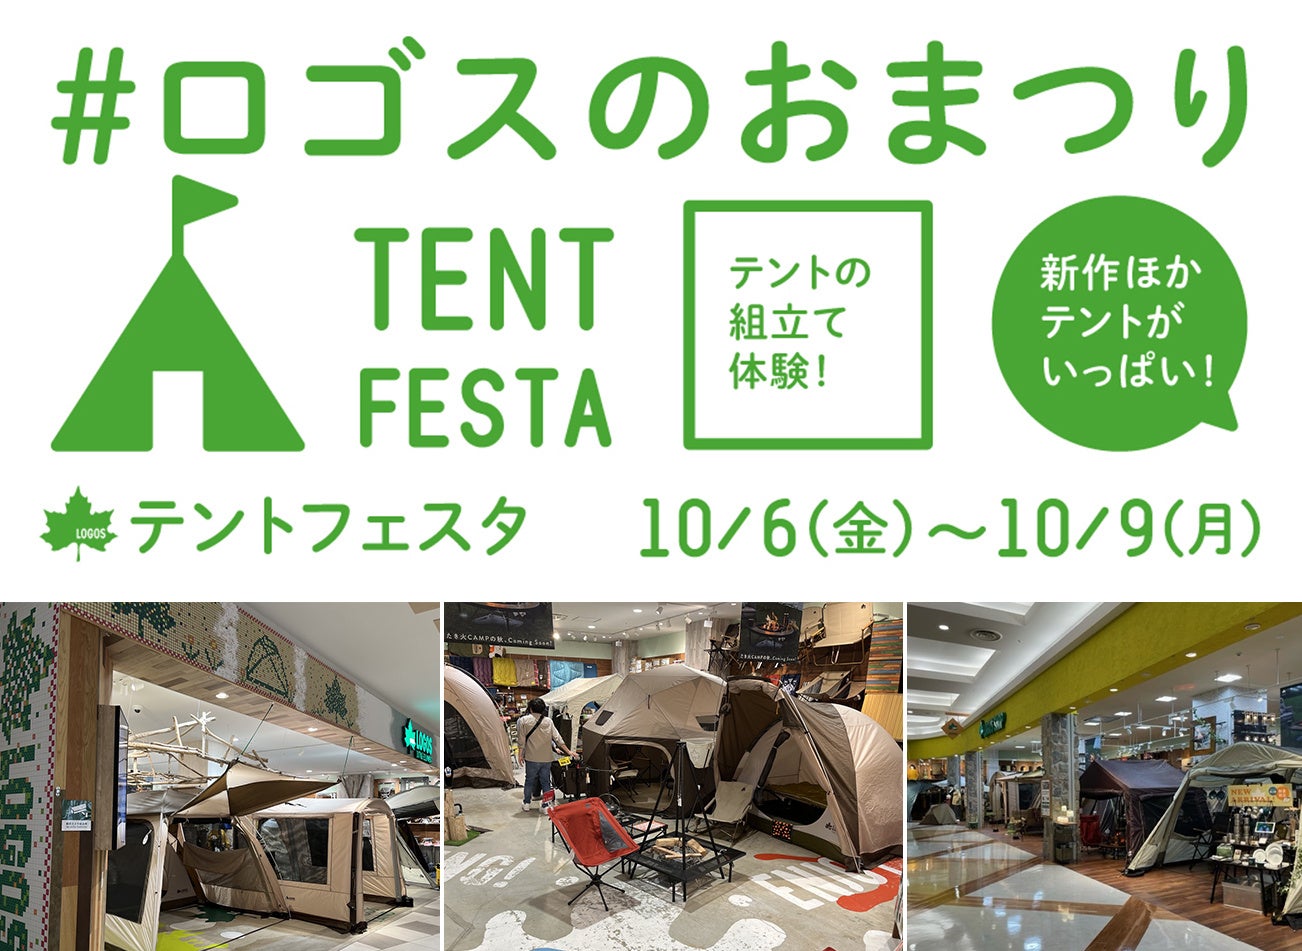 秋のキャンプシーズン到来！テント!テント!!テント!!!で埋め尽くされる4日間「テントフェスタ」開催決定！のサブ画像2_※画像はイメージです